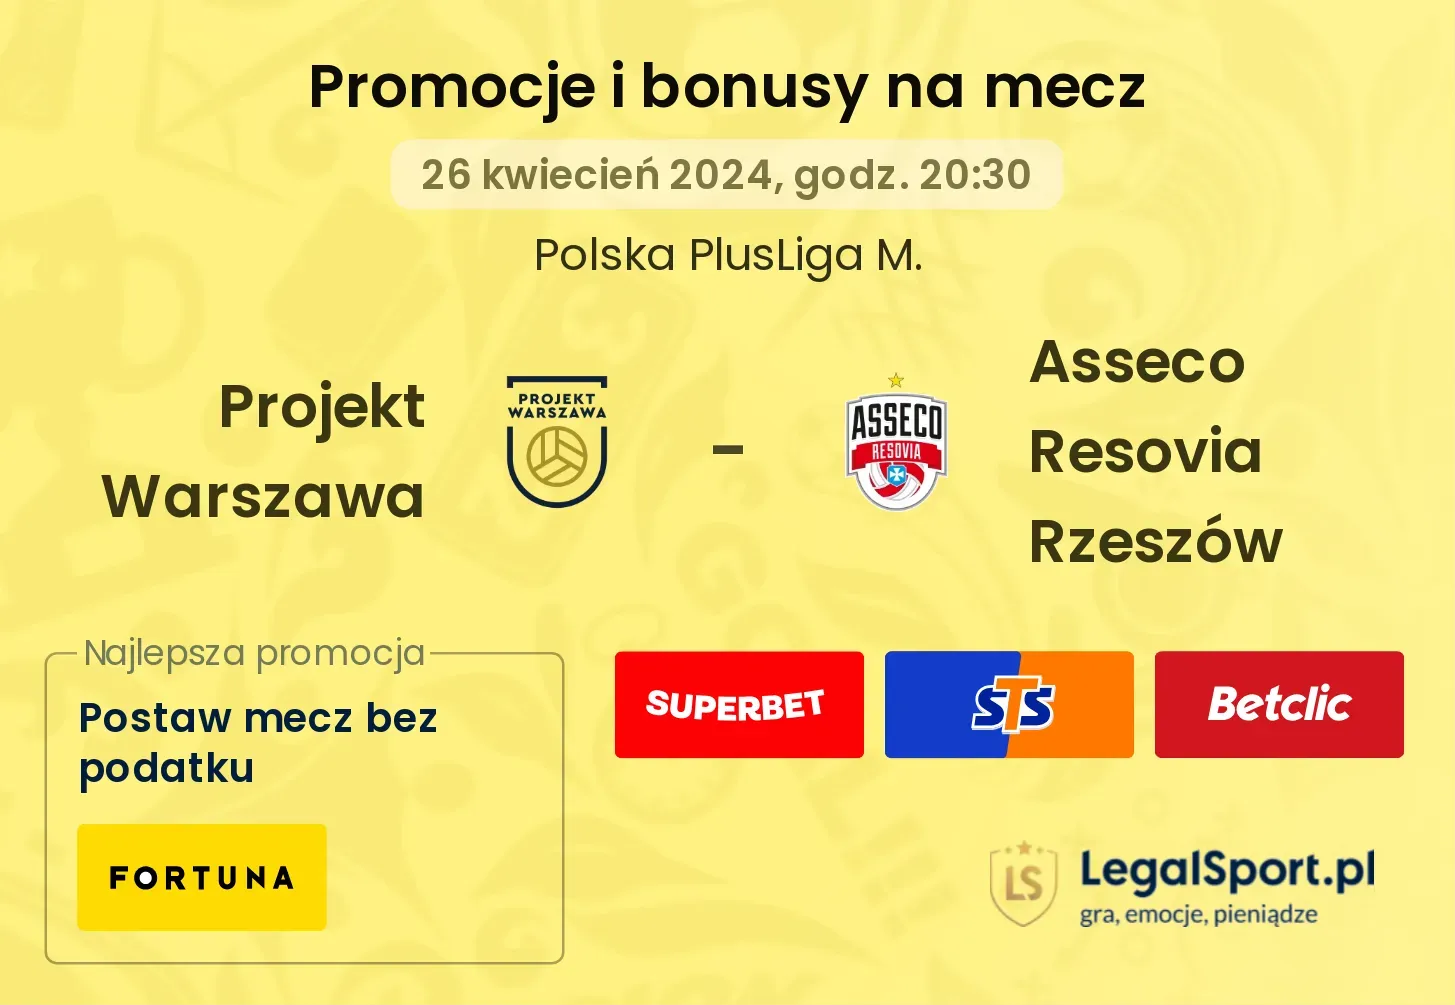 Projekt Warszawa - Asseco Resovia Rzeszów promocje bonusy na mecz